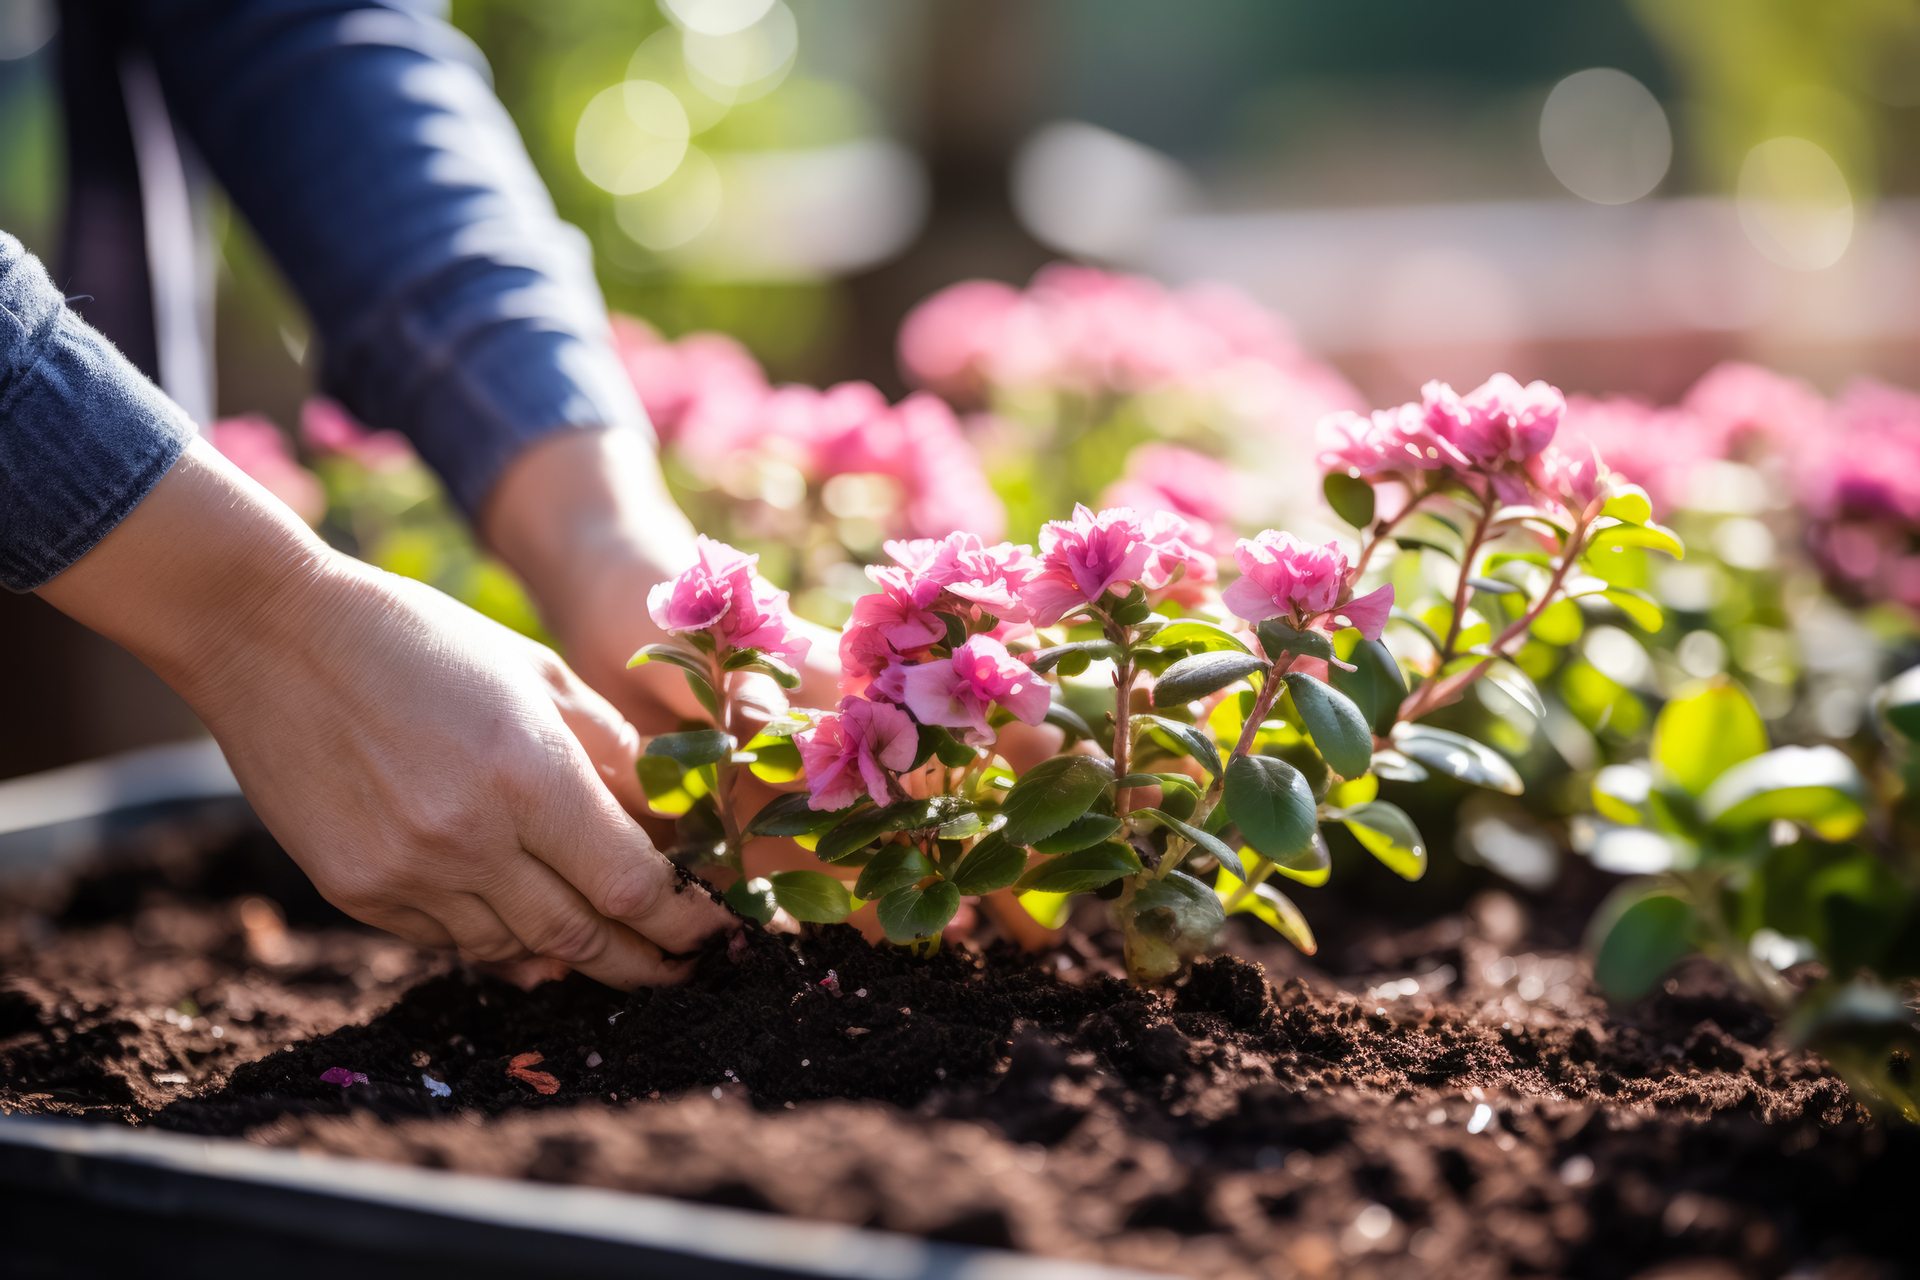 Ten ujmujący obrazek przedstawia proces sadzenia kwiatów na warstwie kompostu. Widzimy ręce, które delikatnie umieszczają kolorowe rośliny w przygotowanej ziemi, bogatej w składniki odżywcze. Kompost pełni rolę doskonałego podłoża, zapewniając optymalne warunki wzrostu i dostarczając roślinom niezbędne składniki odżywcze. Dzięki tej metodzie sadzenia, kwiaty będą miały doskonałą szansę na zdrowy rozwój i piękne kwitnienie